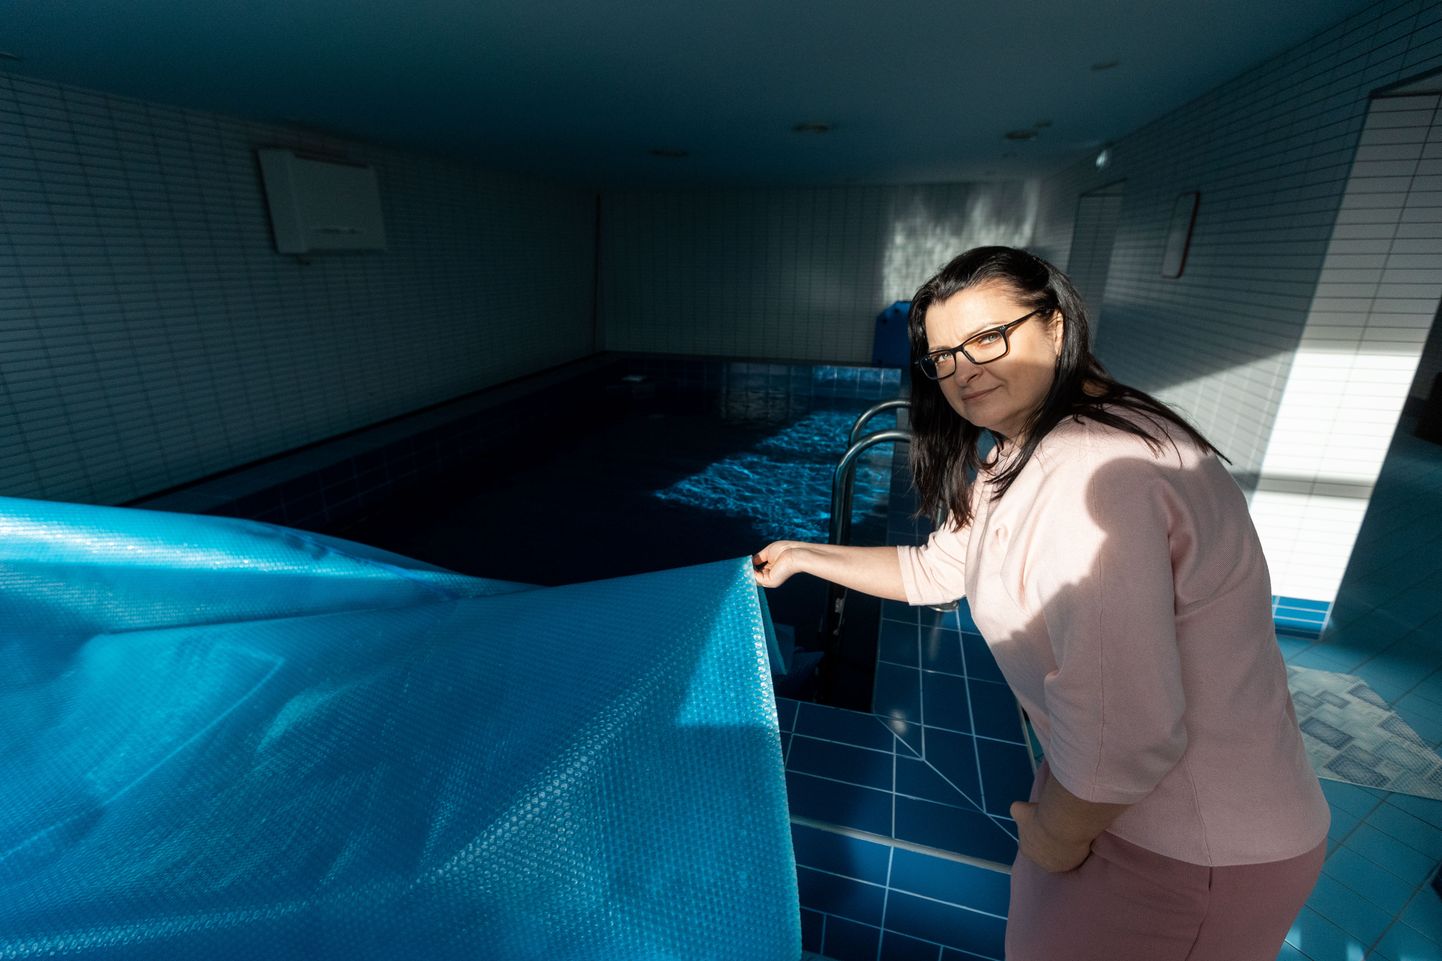 Tabja lasteaed-kooli direktor Margit Silluta näitas veebruaris lasteaia taasavatud basseini.